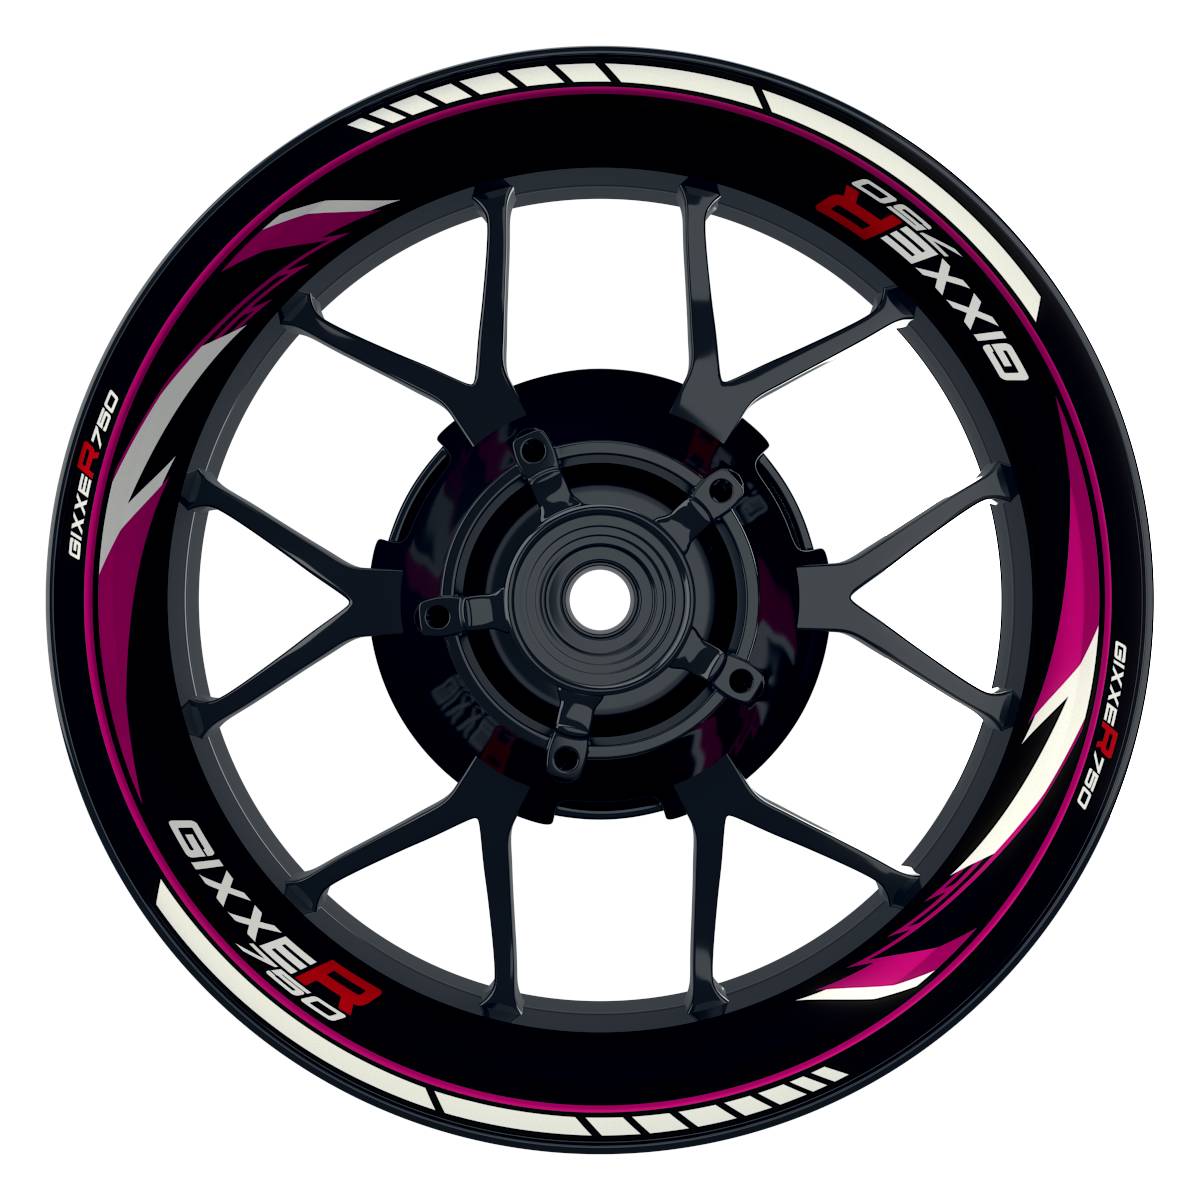 GIXXER750 Razor schwarz pink Wheelsticker Felgenaufkleber